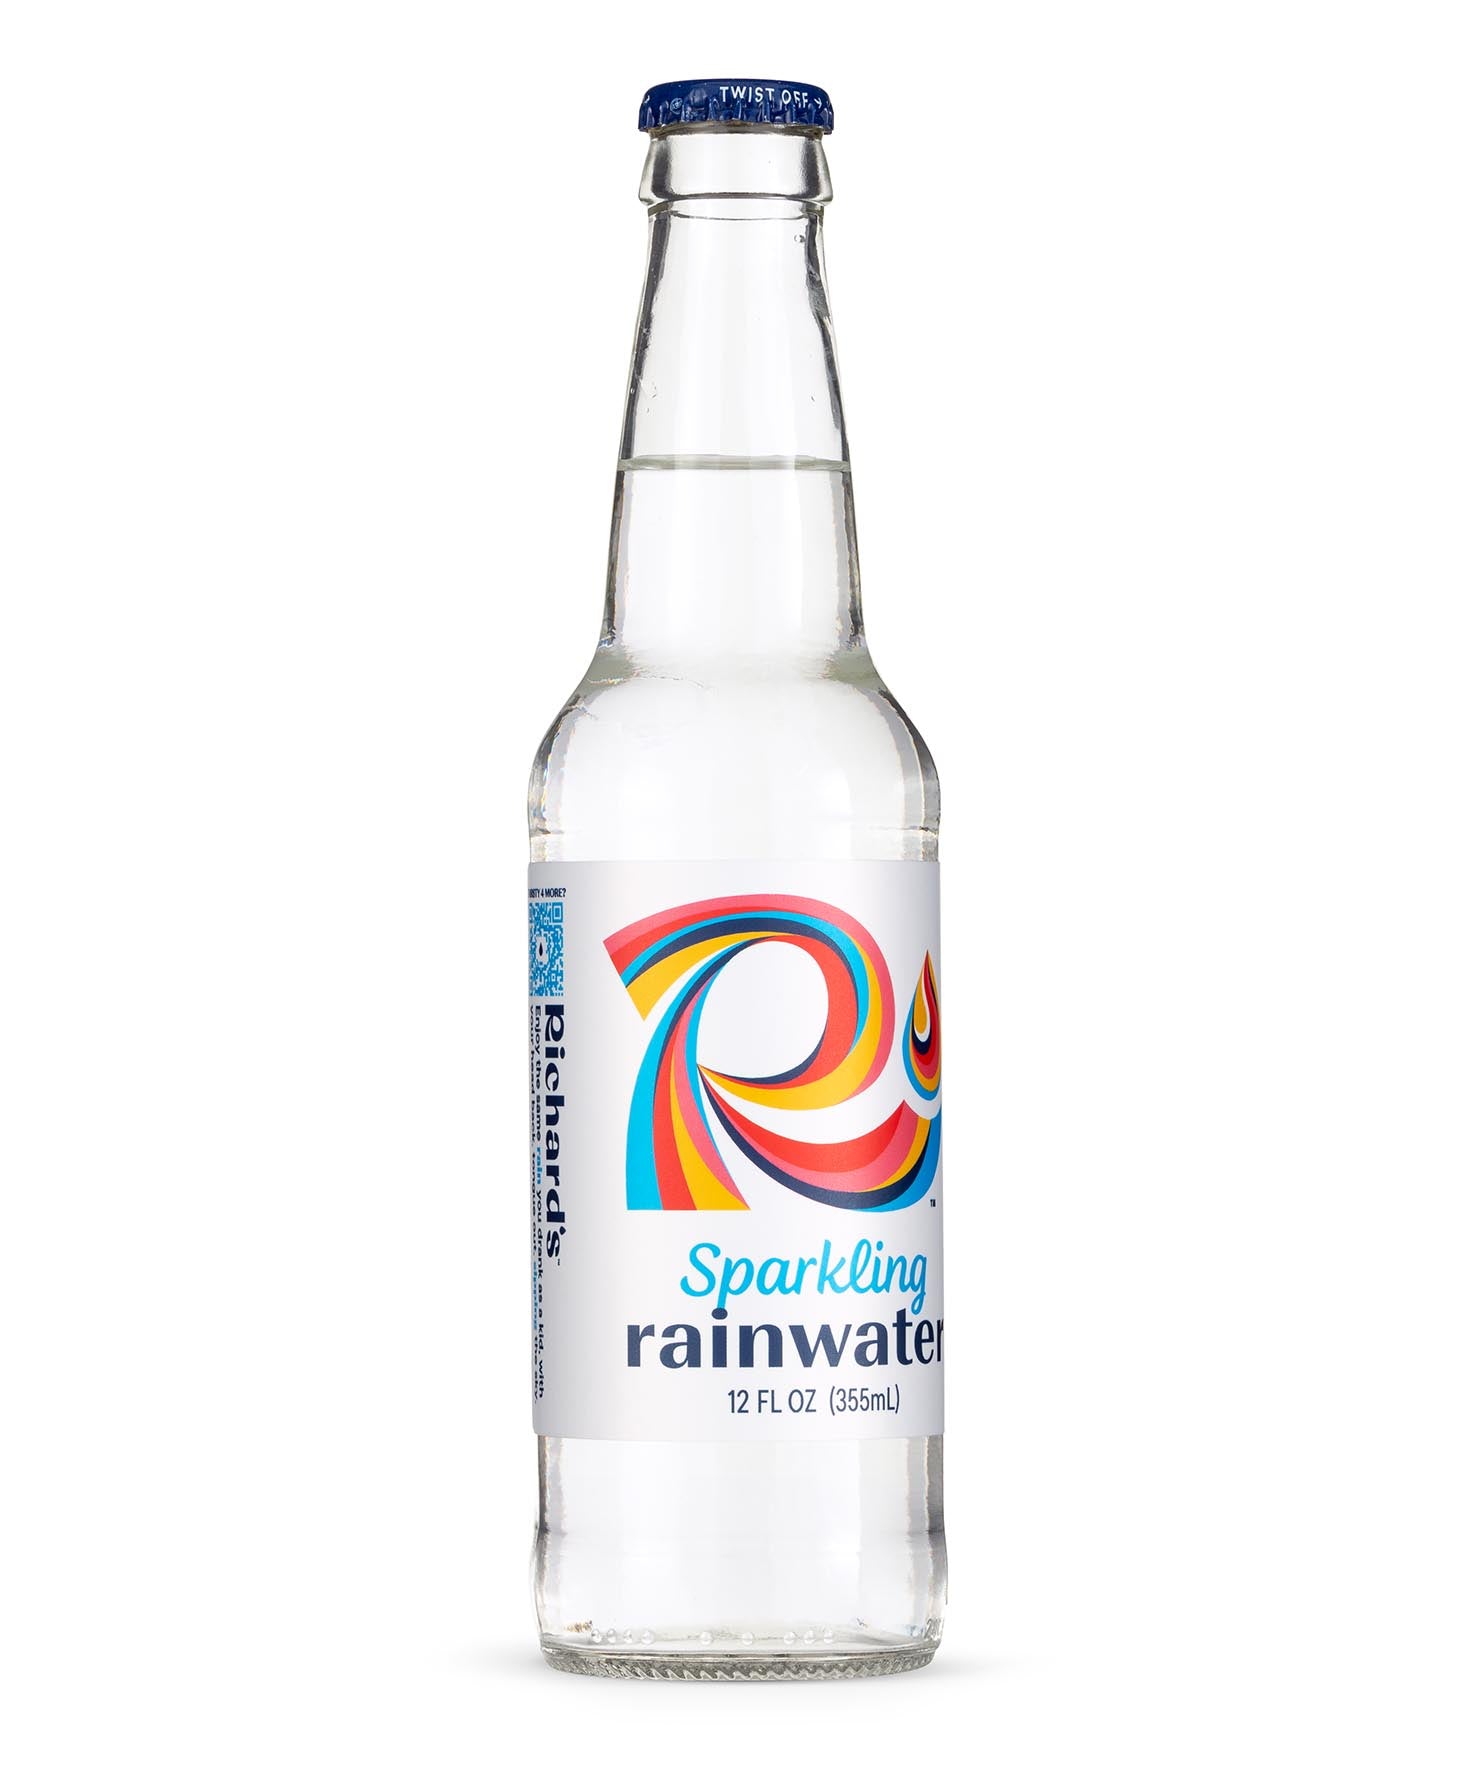 Richard's Sparkling Rainwater Glass Bottle